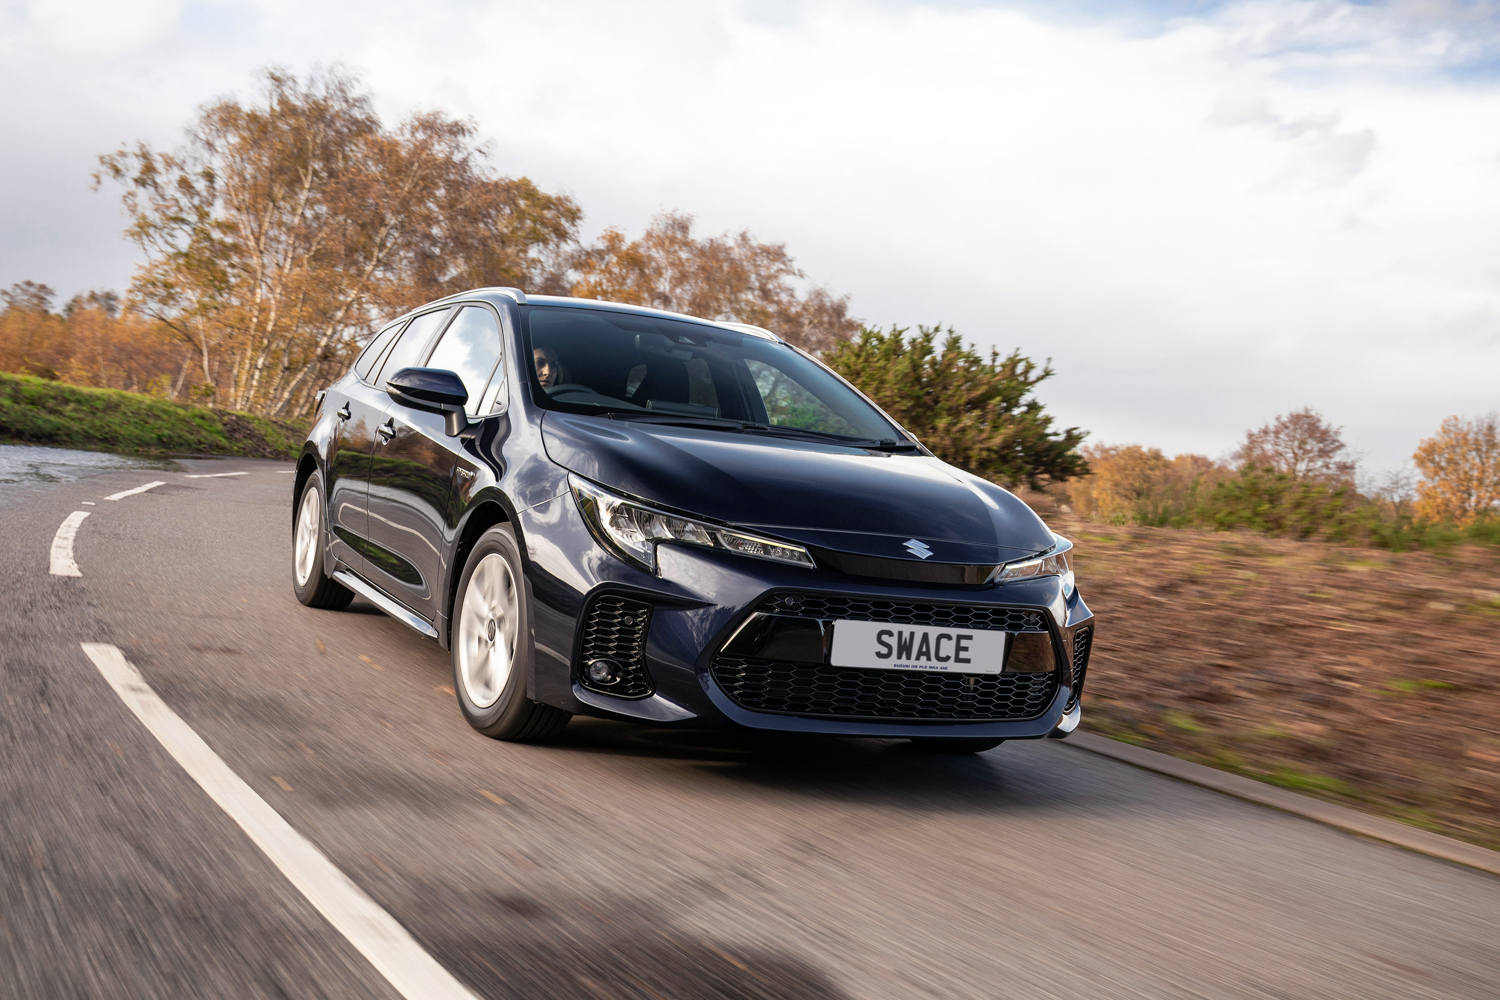 Car News | Suzuki launches Swace hybrid estate in Ireland